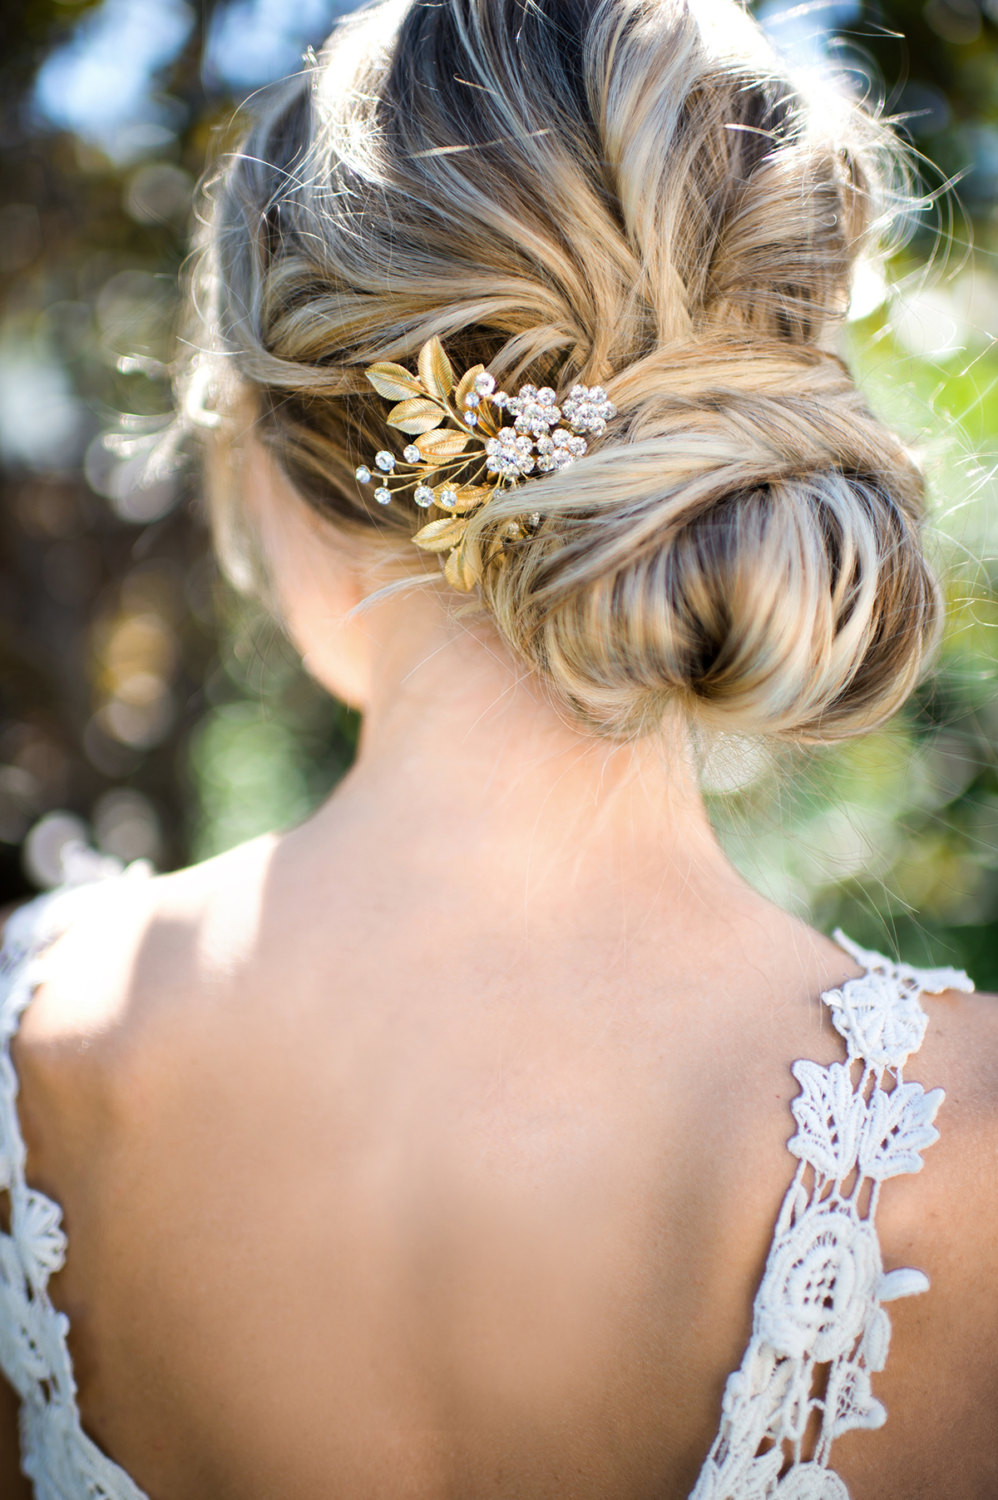 gold leaf hair accessory for weddings | lottie-da designs | https://emmalinebride.com/bride/gold-leaf-hair-accessory/